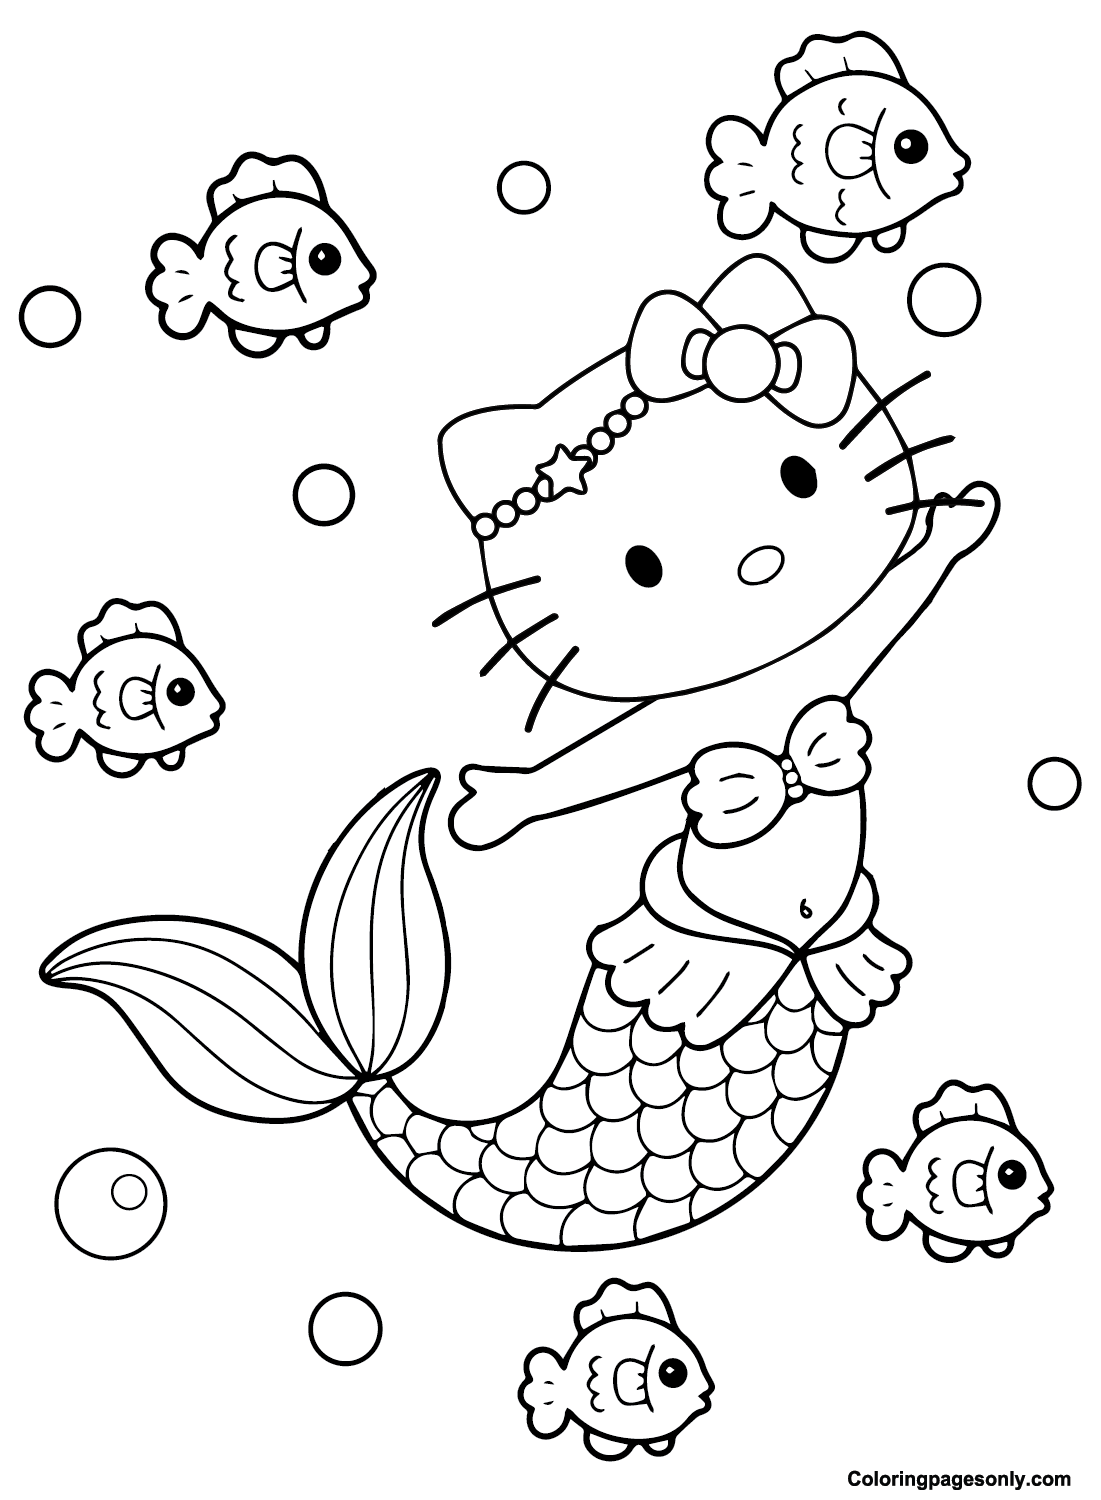 Imprimir Hello Kitty Mermaid de Hello Kitty Mermaid